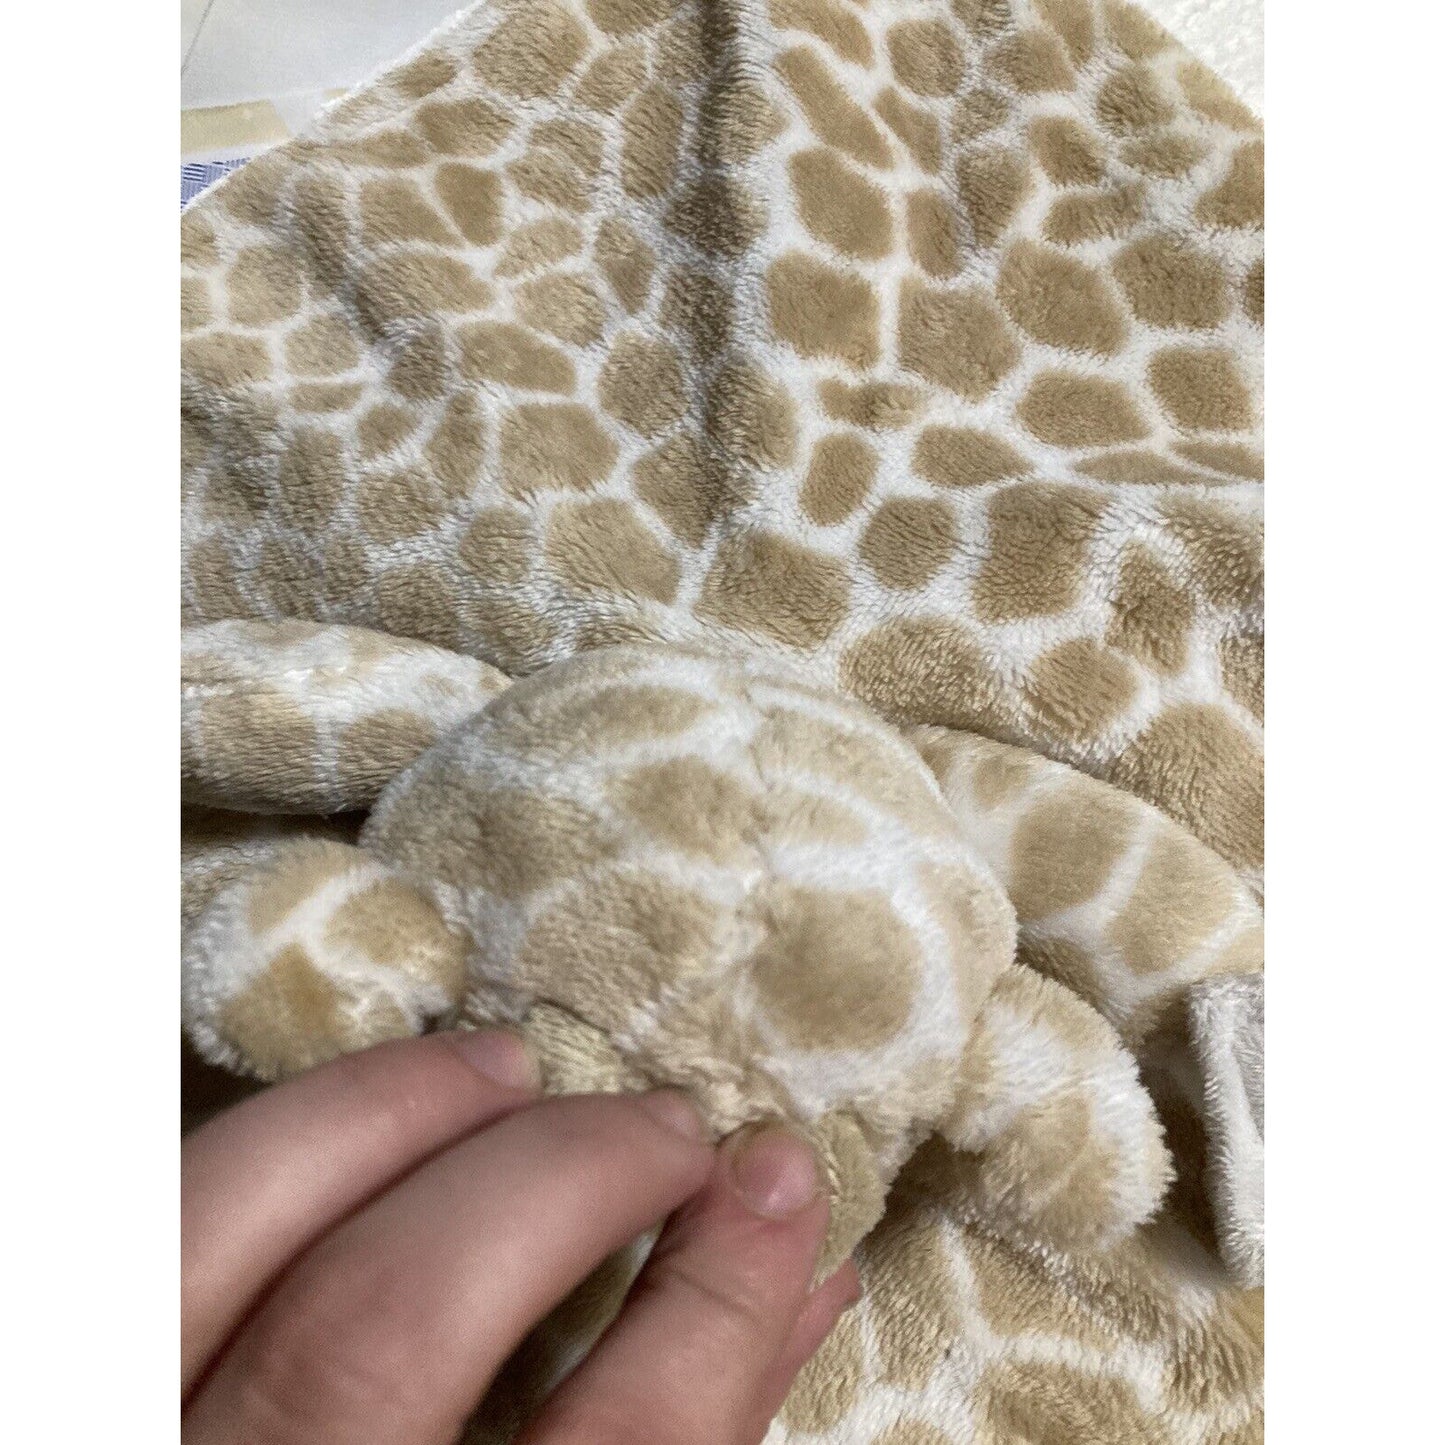 Carter's Giraffe Plush Animal Snuggler Lovey Security Blanket Pacifier Holder